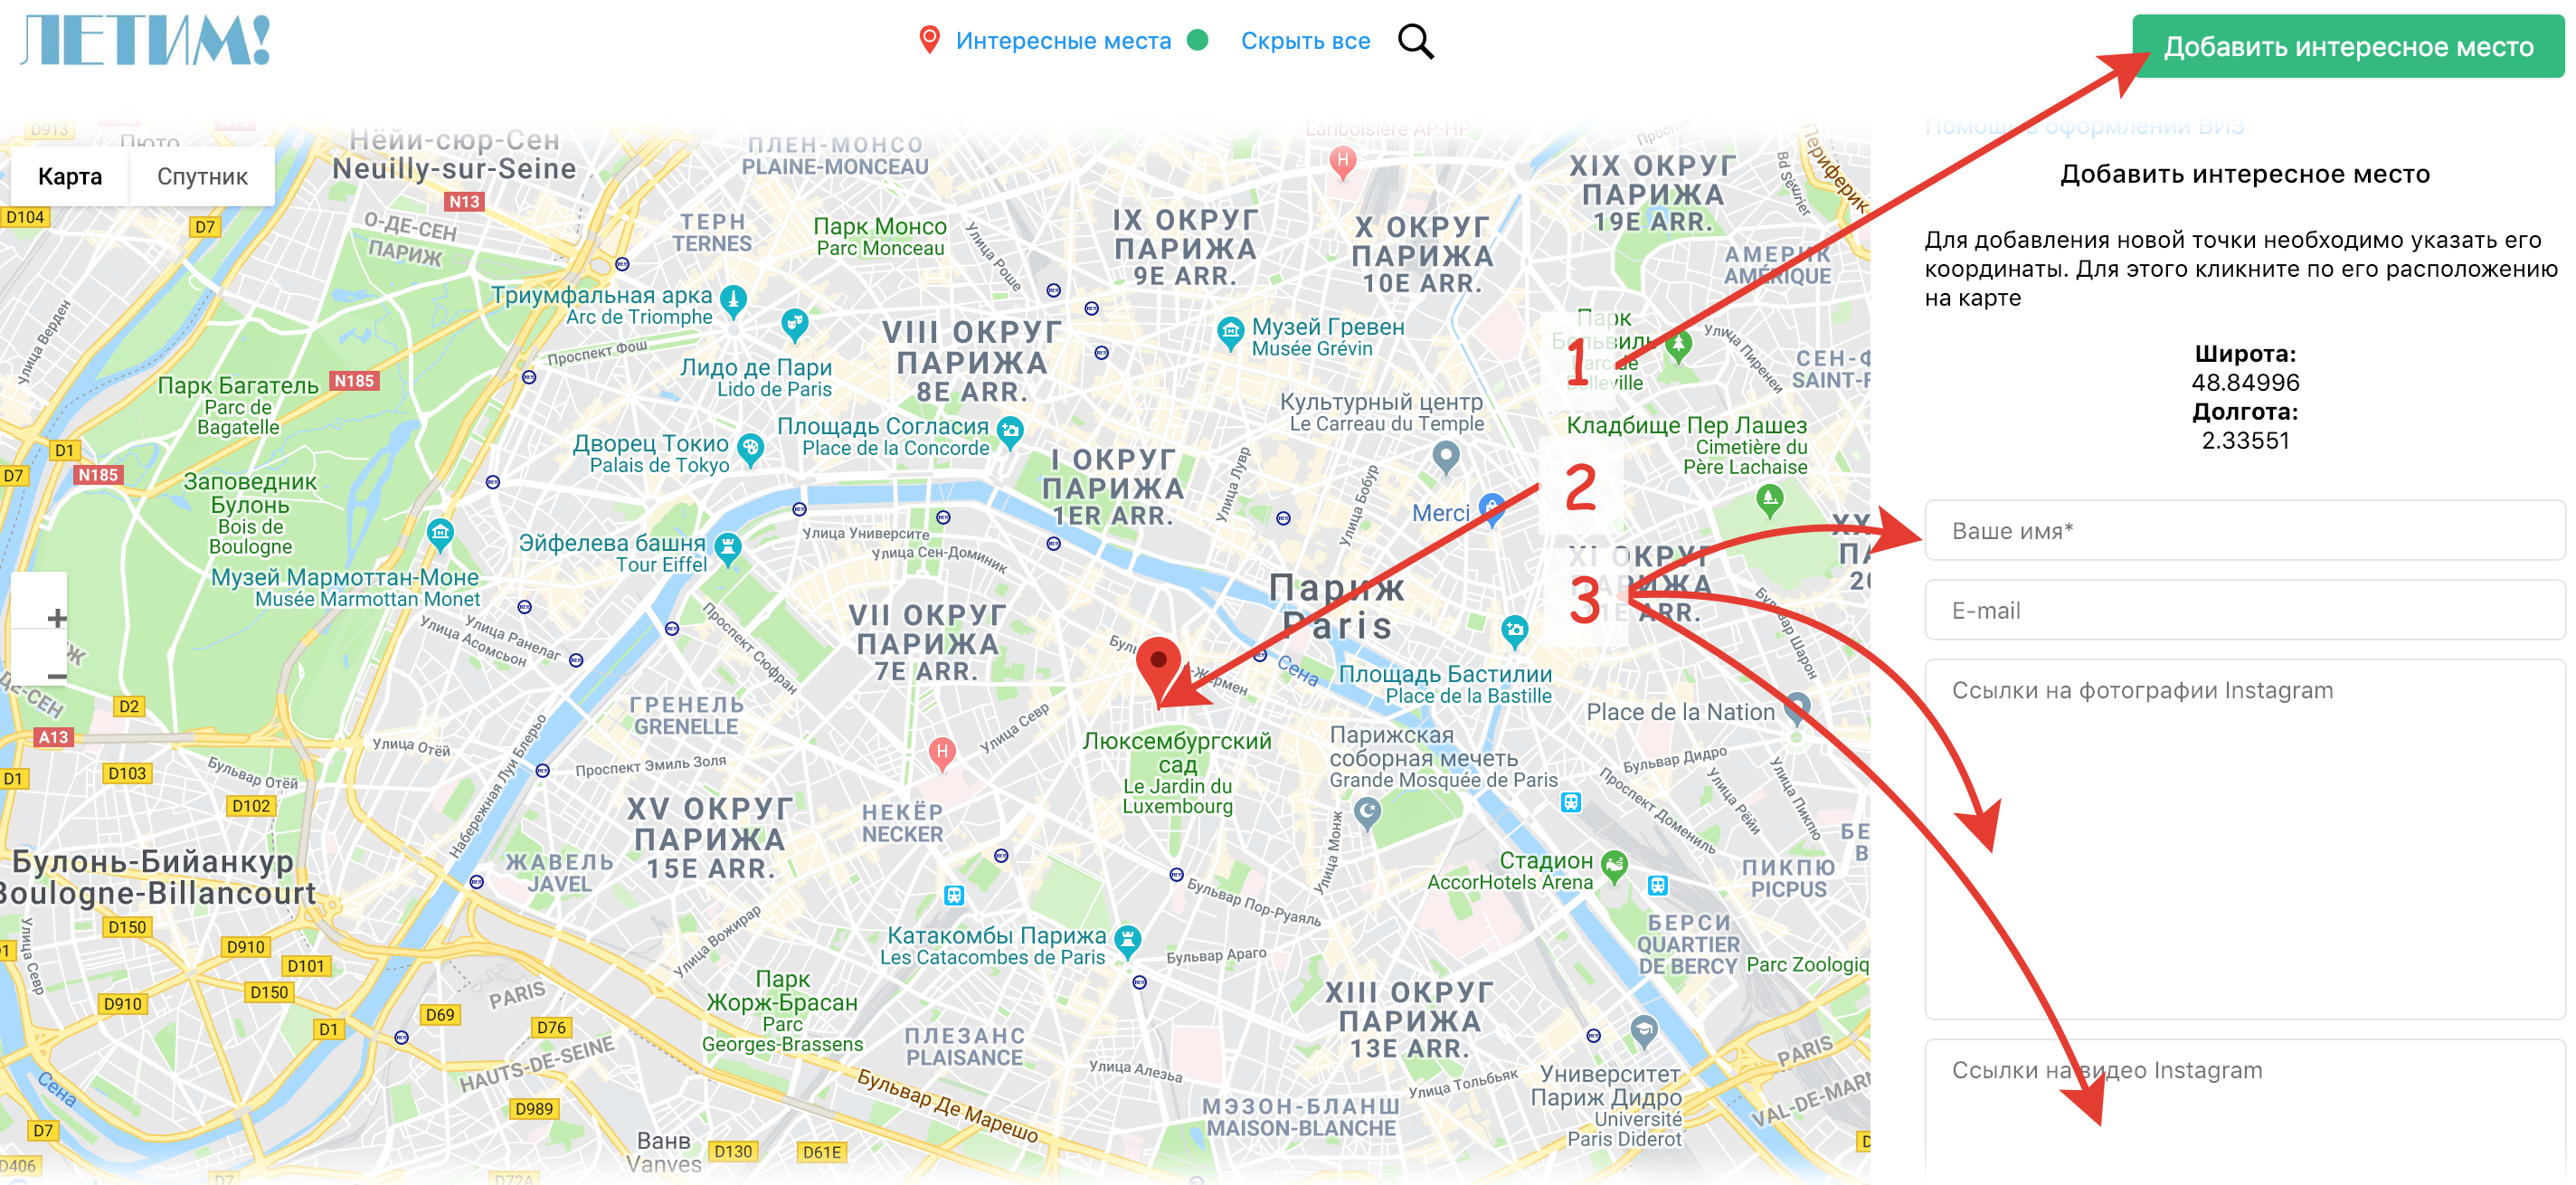 Пересадка париж. Зоны Парижа на карте. Карта Парижа. Зоны метро Парижа. Карта метро Парижа с зонами.